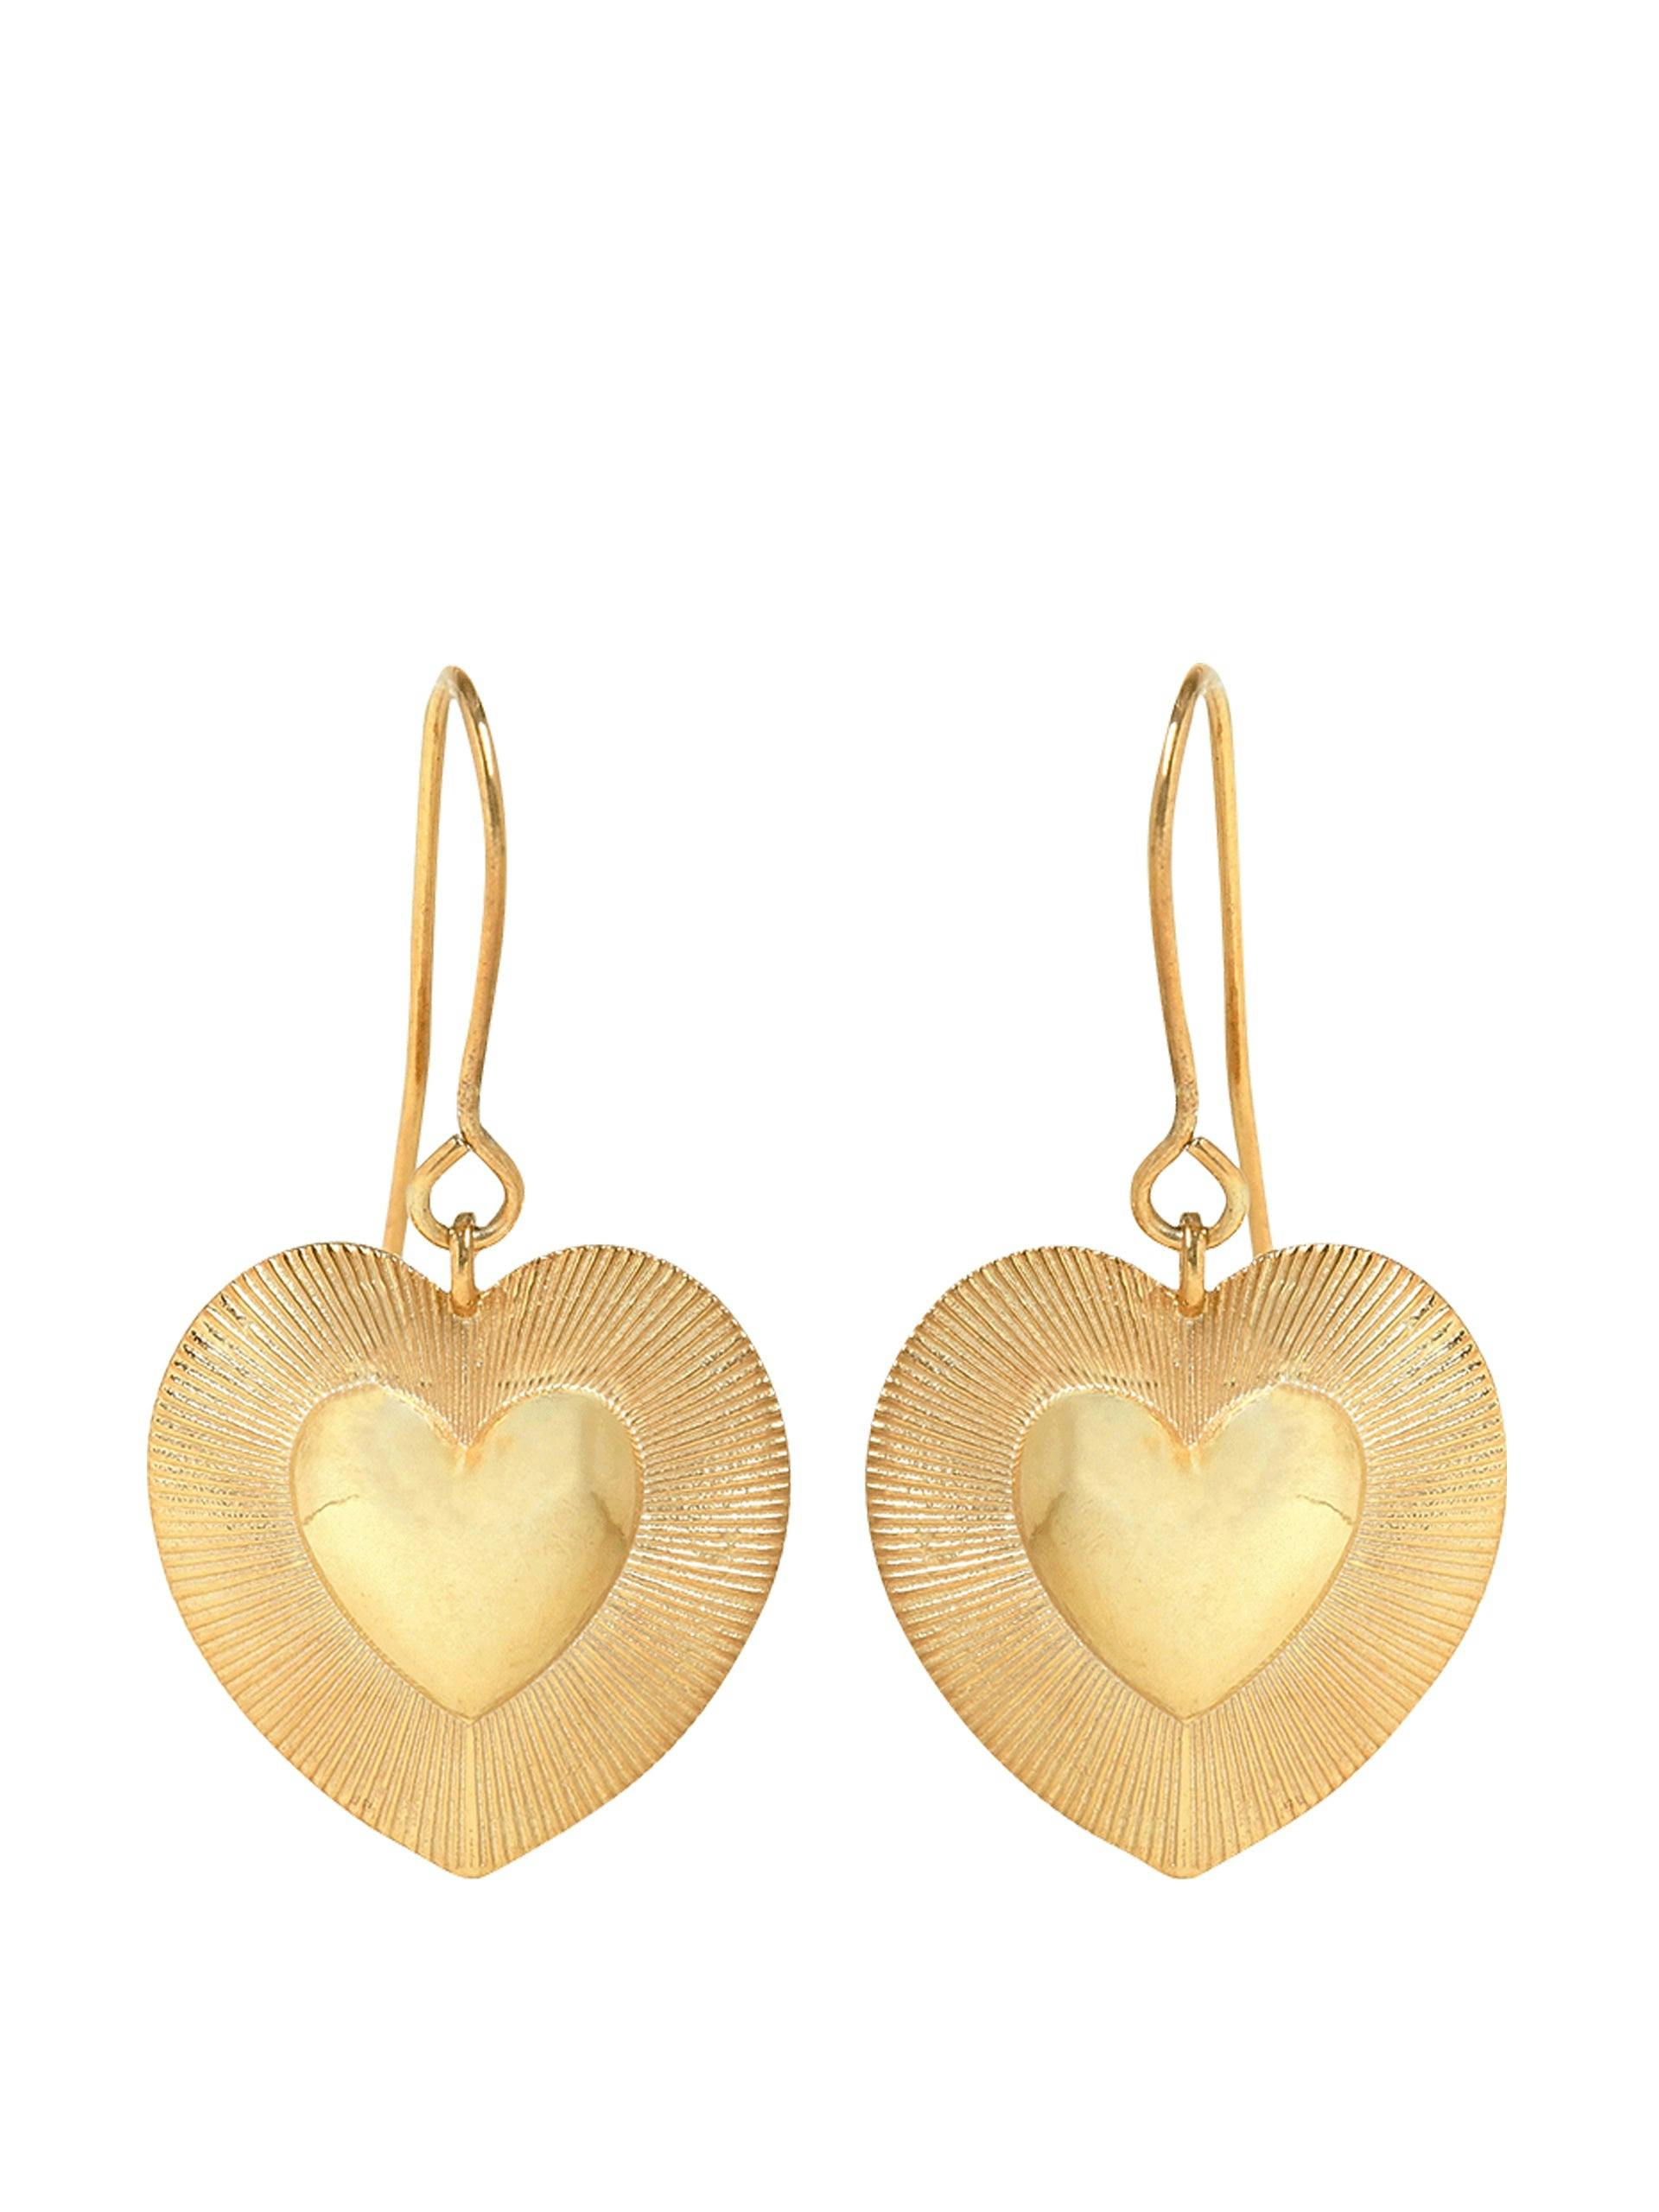 Pothos heart-shaped drop earrings